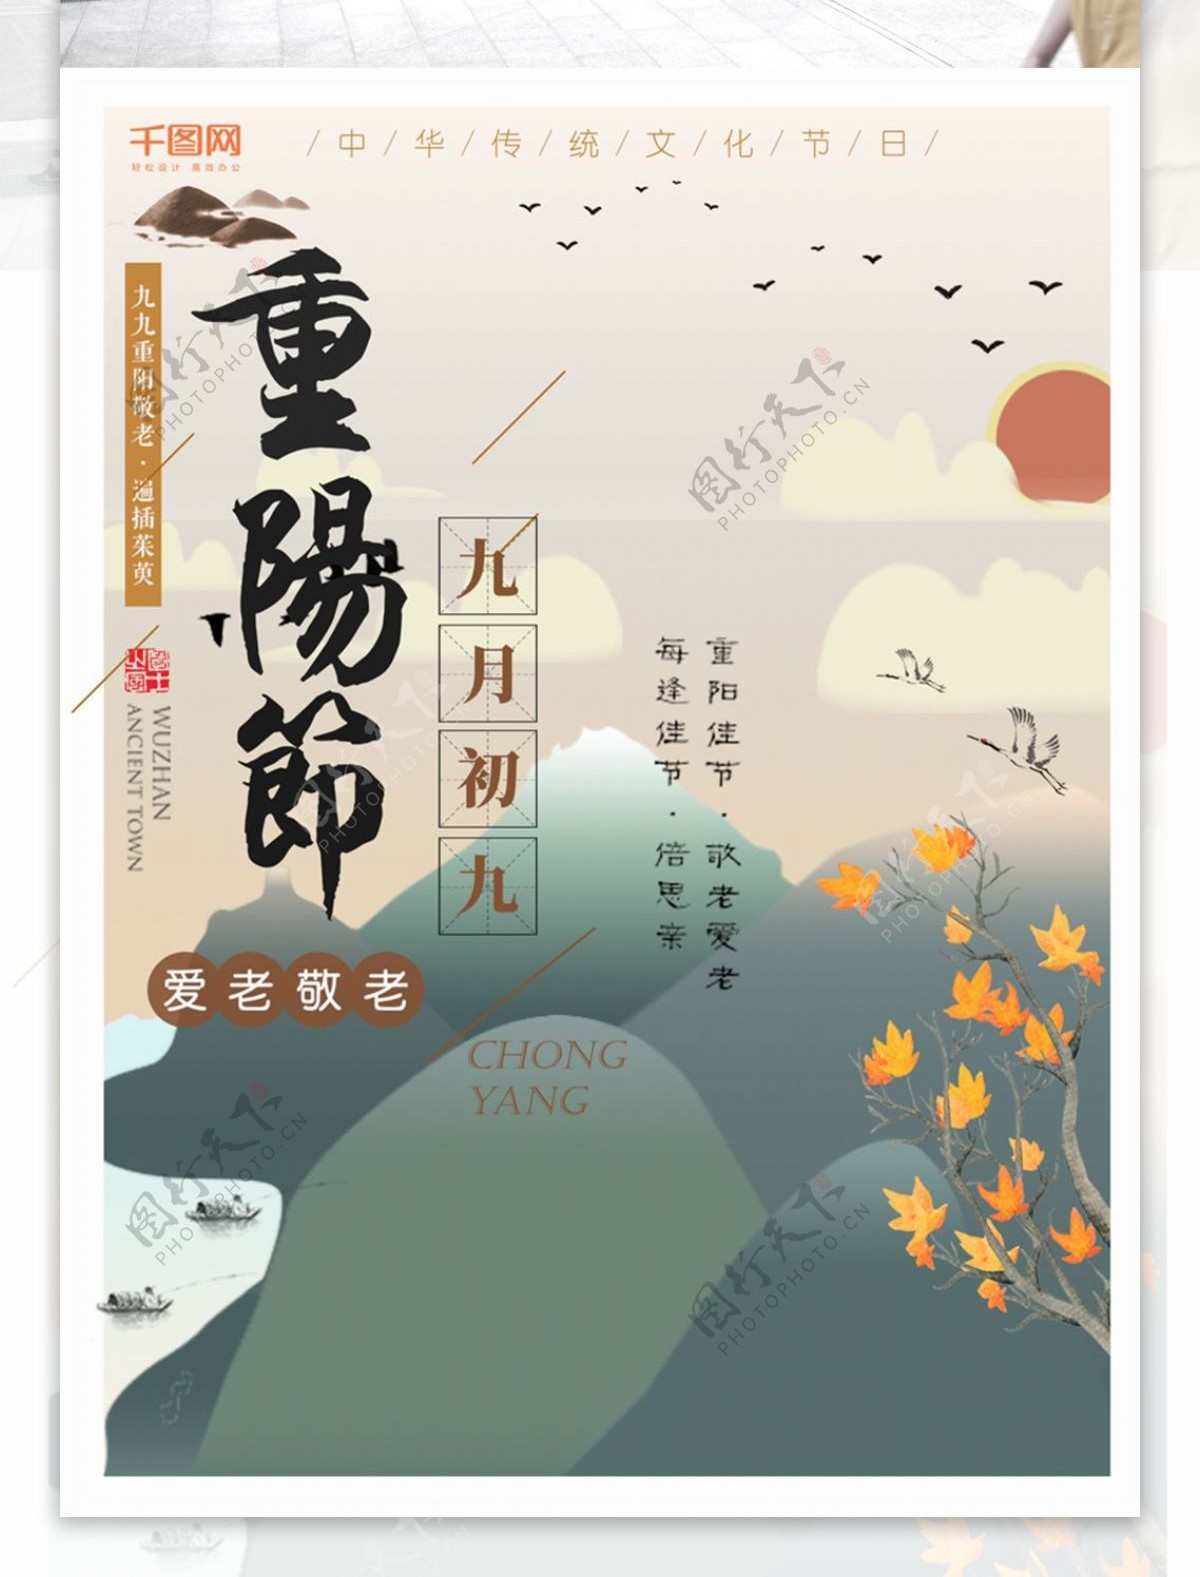 重阳节墨绿色山水原创插画传统节日海报